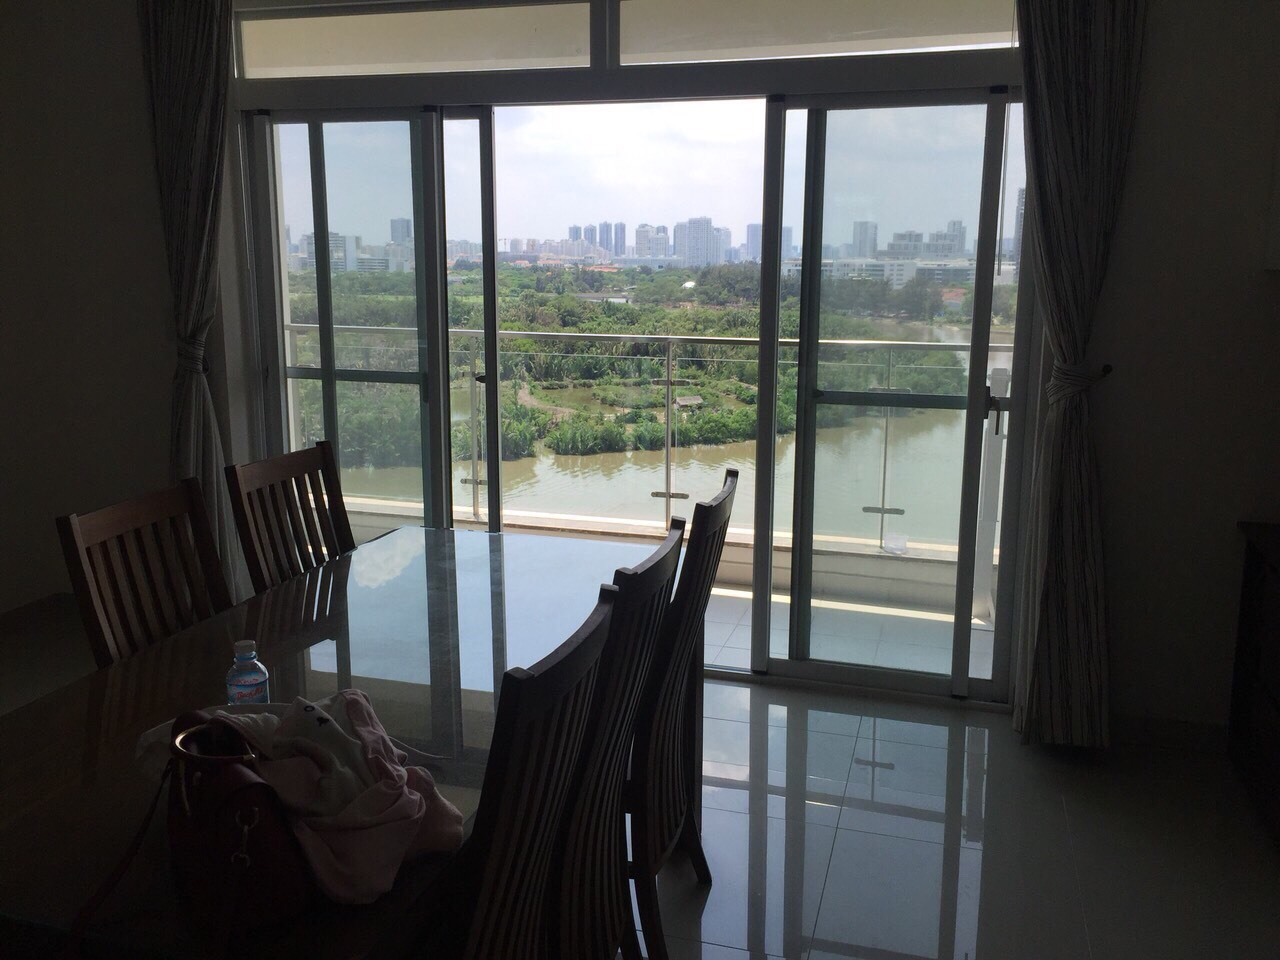 Cho thuê căn hộ Riverside Residence, diện tích 160m2 view sông, nội thất cao cấp 30tr/th.LH 0916.555.439